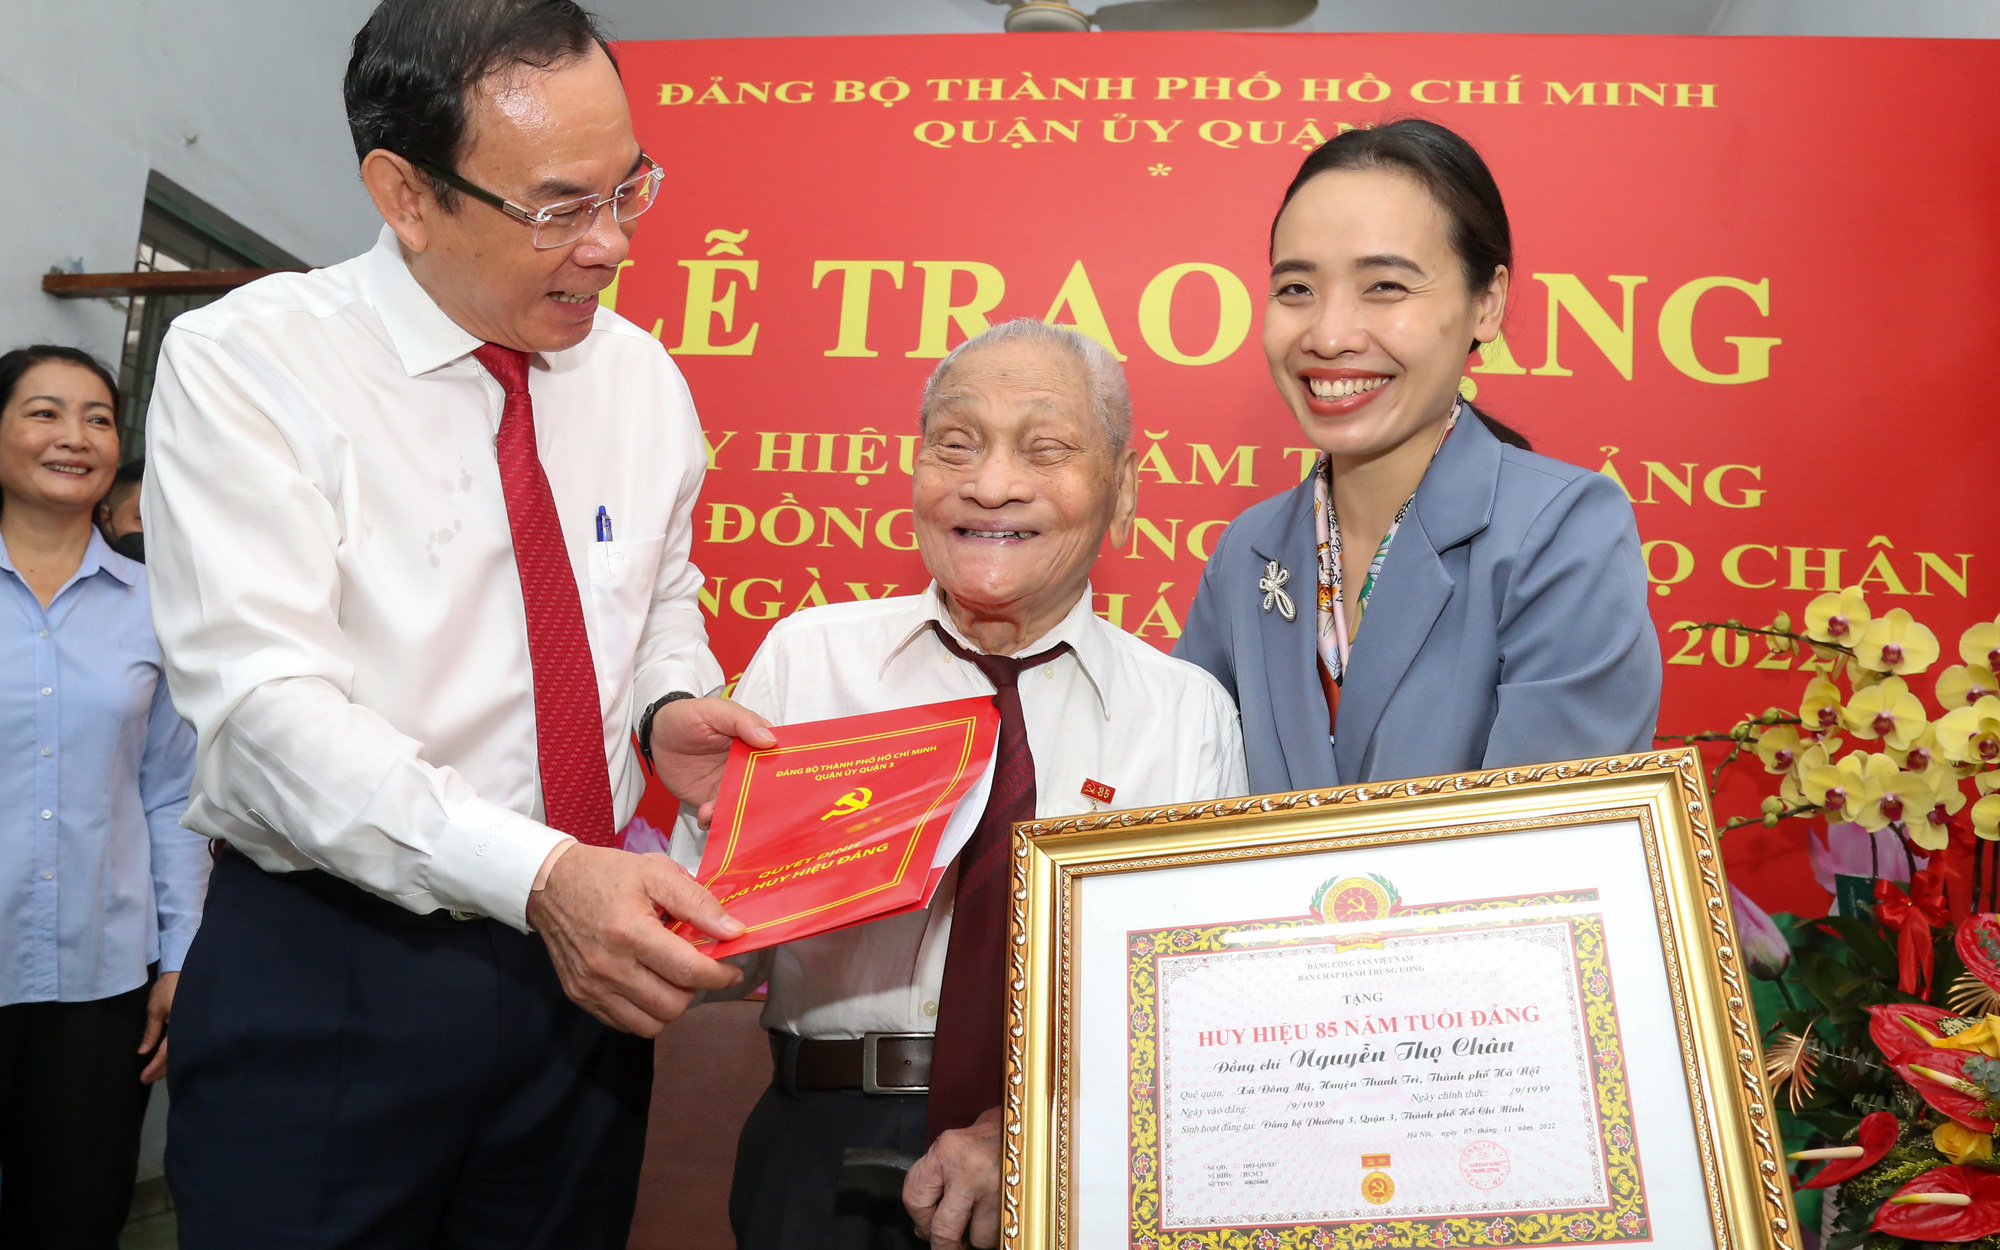 Trao Huy hiệu 85 năm tuổi Đảng cho ông Nguyễn Thọ Chân